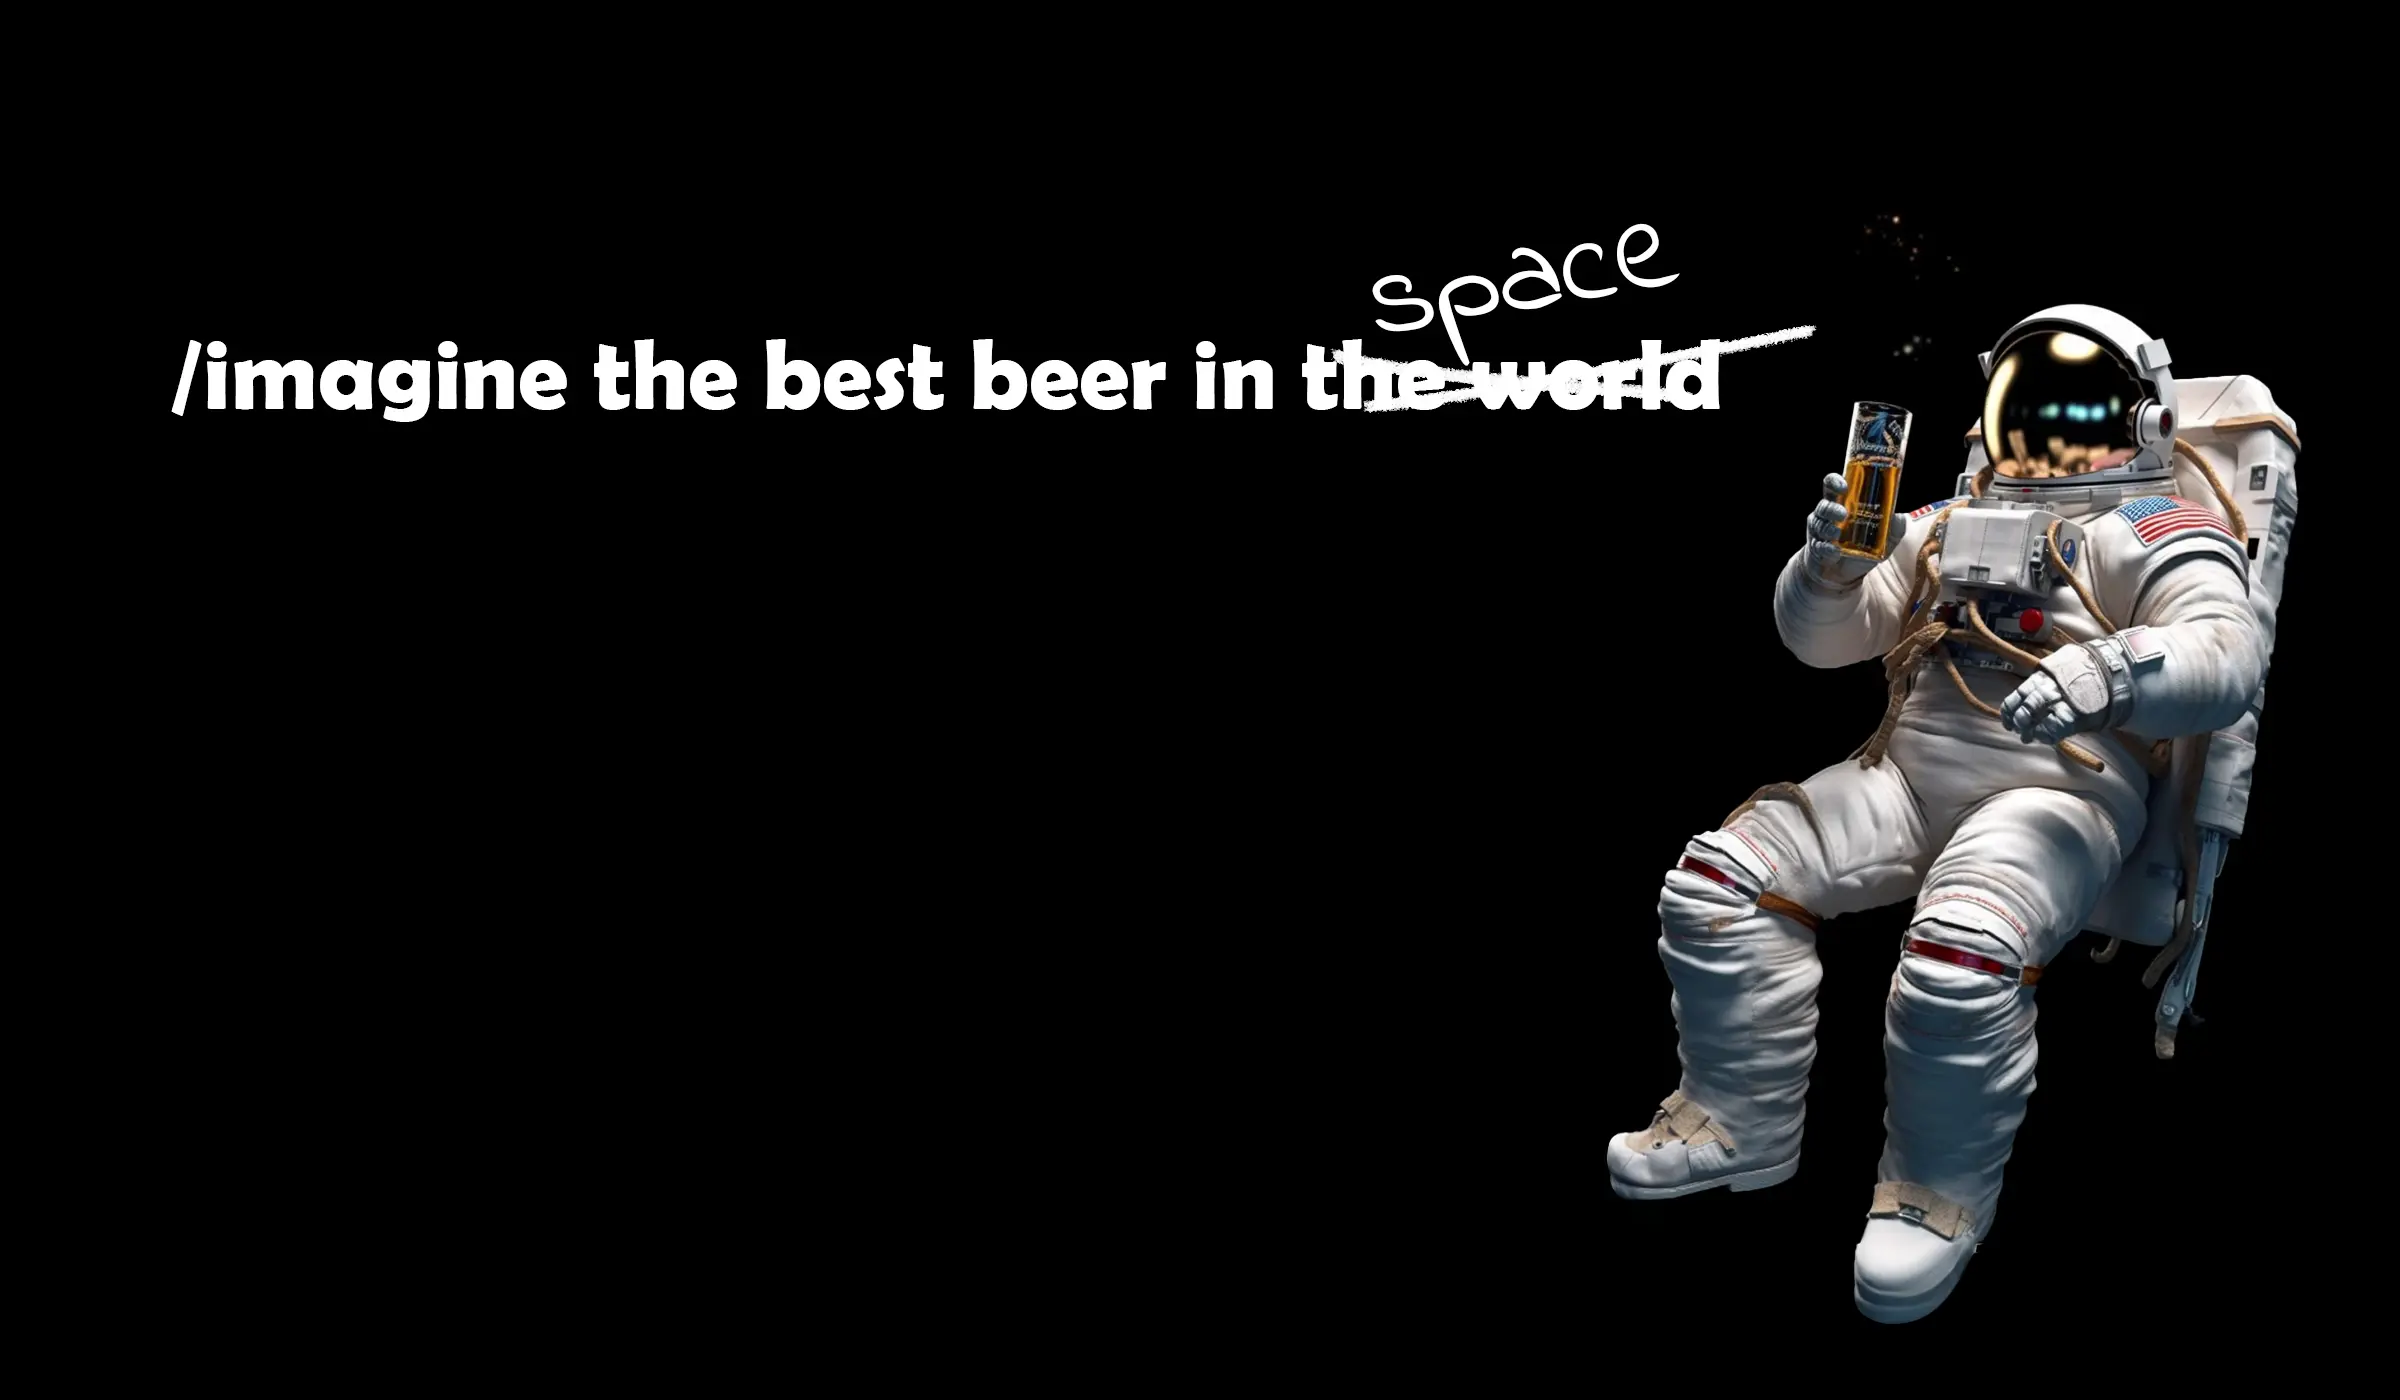 Astronaut trinkt das wohl beste Bier im All - G&G Websolutions